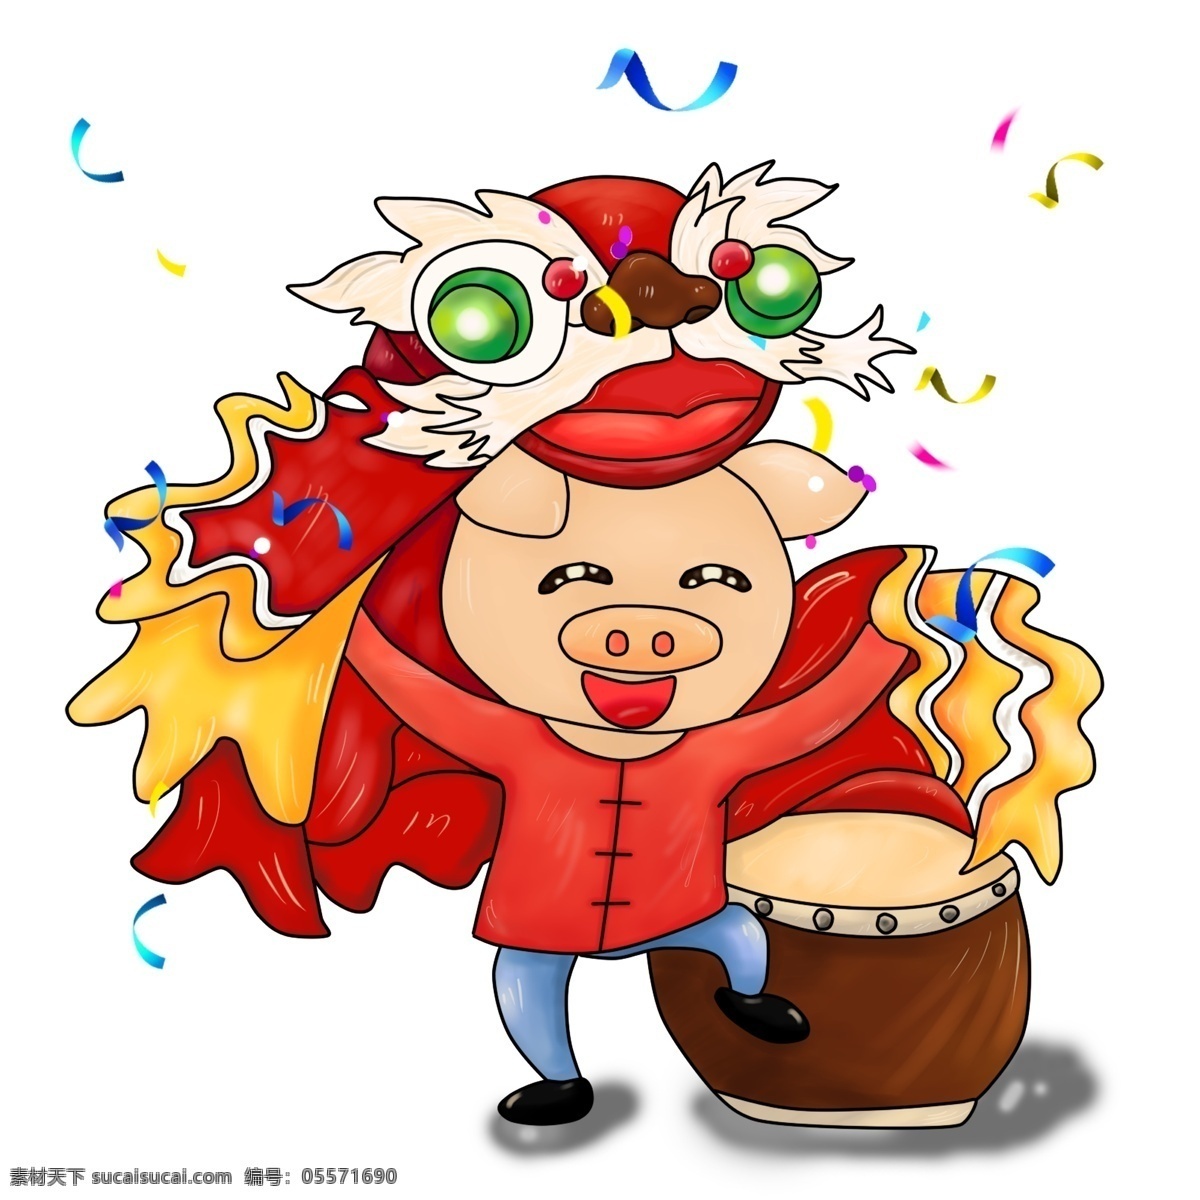 猪年 新年 大吉大利 手绘 厚 涂 插画 卡通 舞狮 中国风 喜庆 厚涂 醒狮 打鼓 免抠图